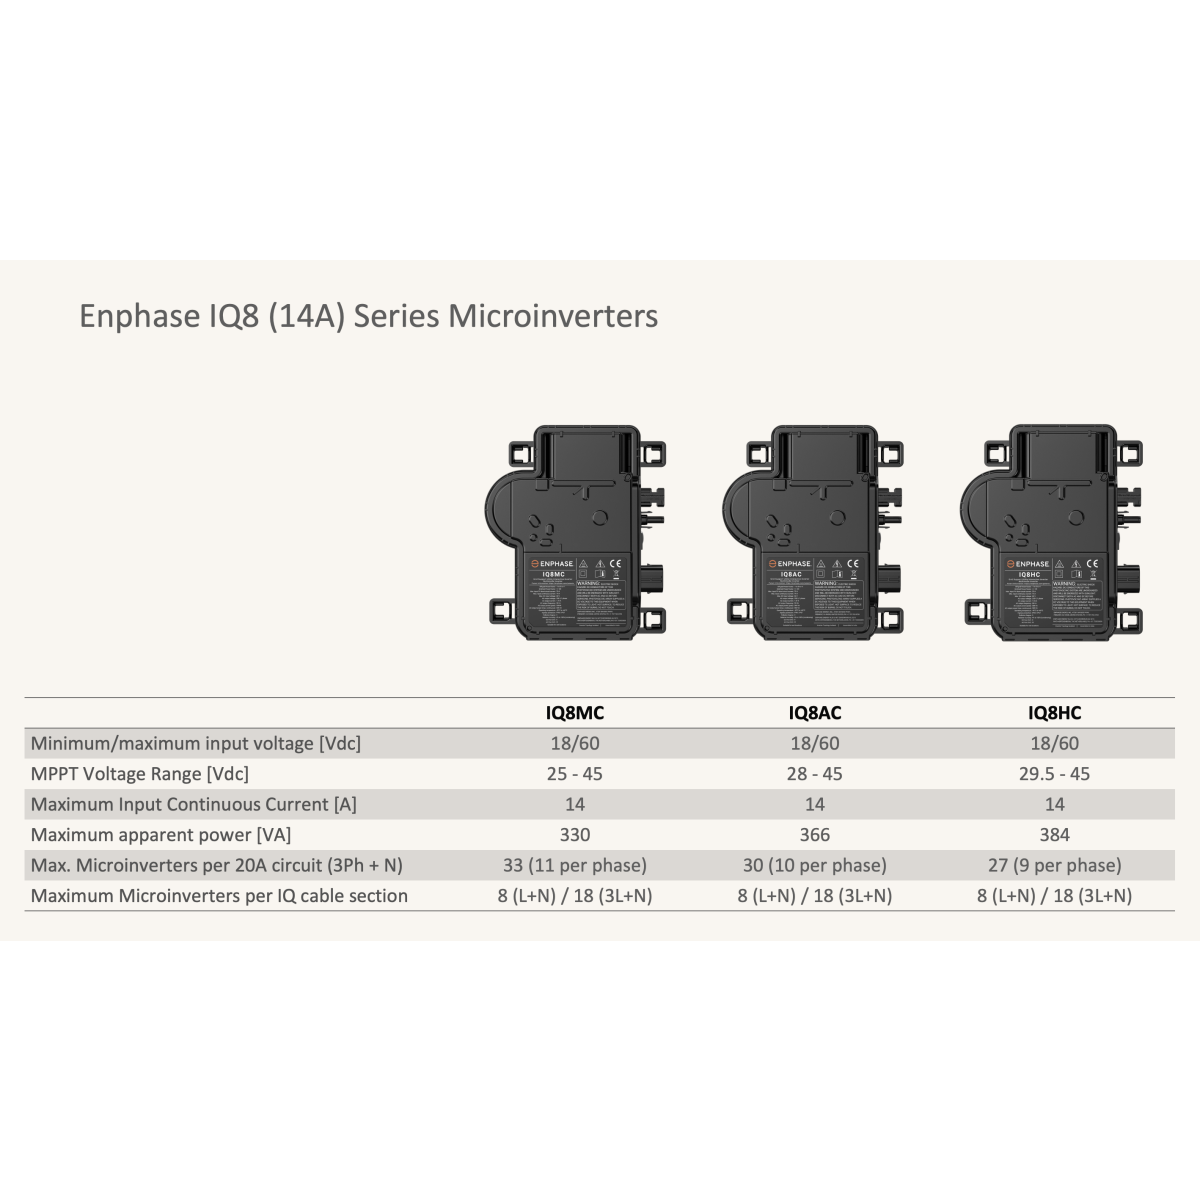 Enphase IQ8-HC Micro Wechselrichter, 560W, 14A, 384va, 380W, 29,5/45 MPP -Spannung, max. 27 Mikroverstärker pro 20A-Schaltung